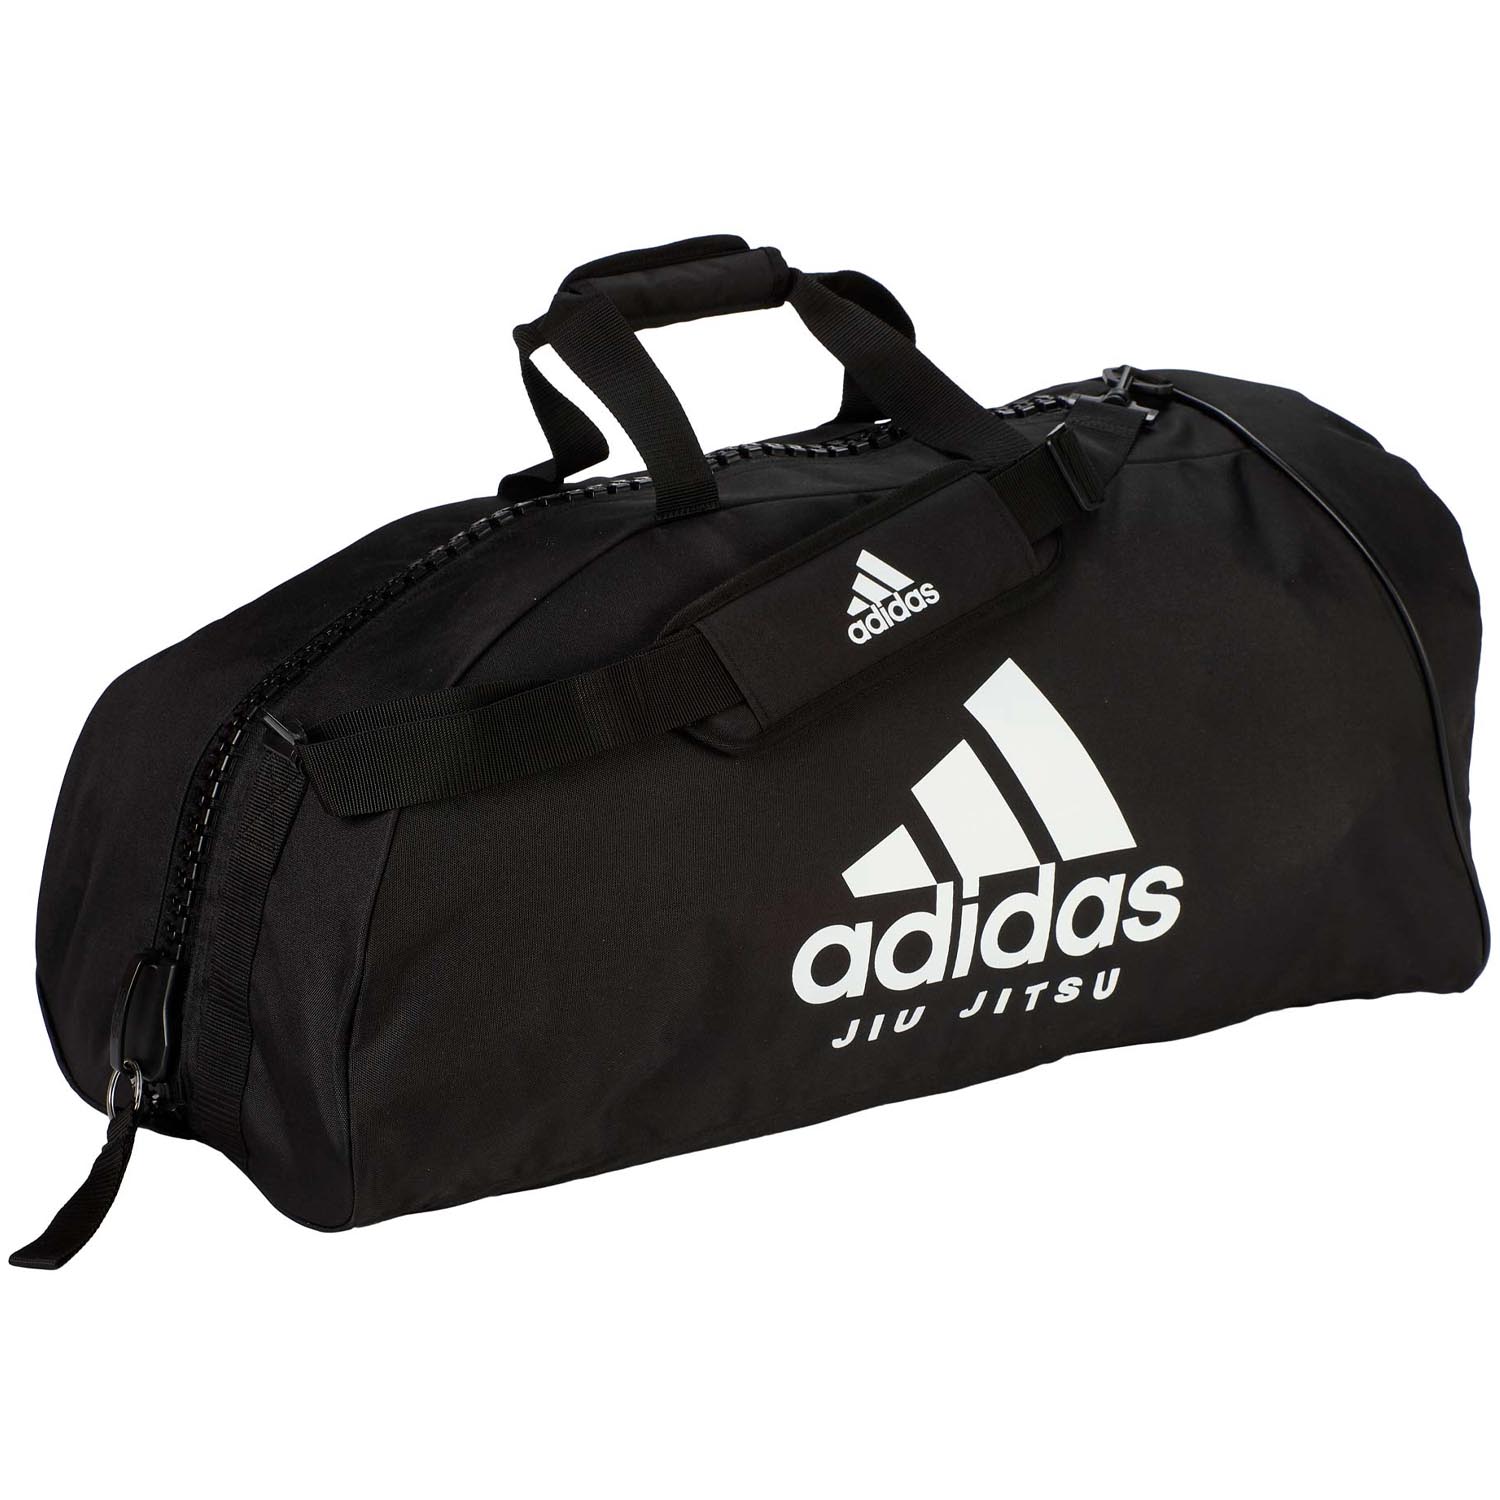 adidas Sporttasche, Jiu Jitsu, Nylon, schwarz-weiß